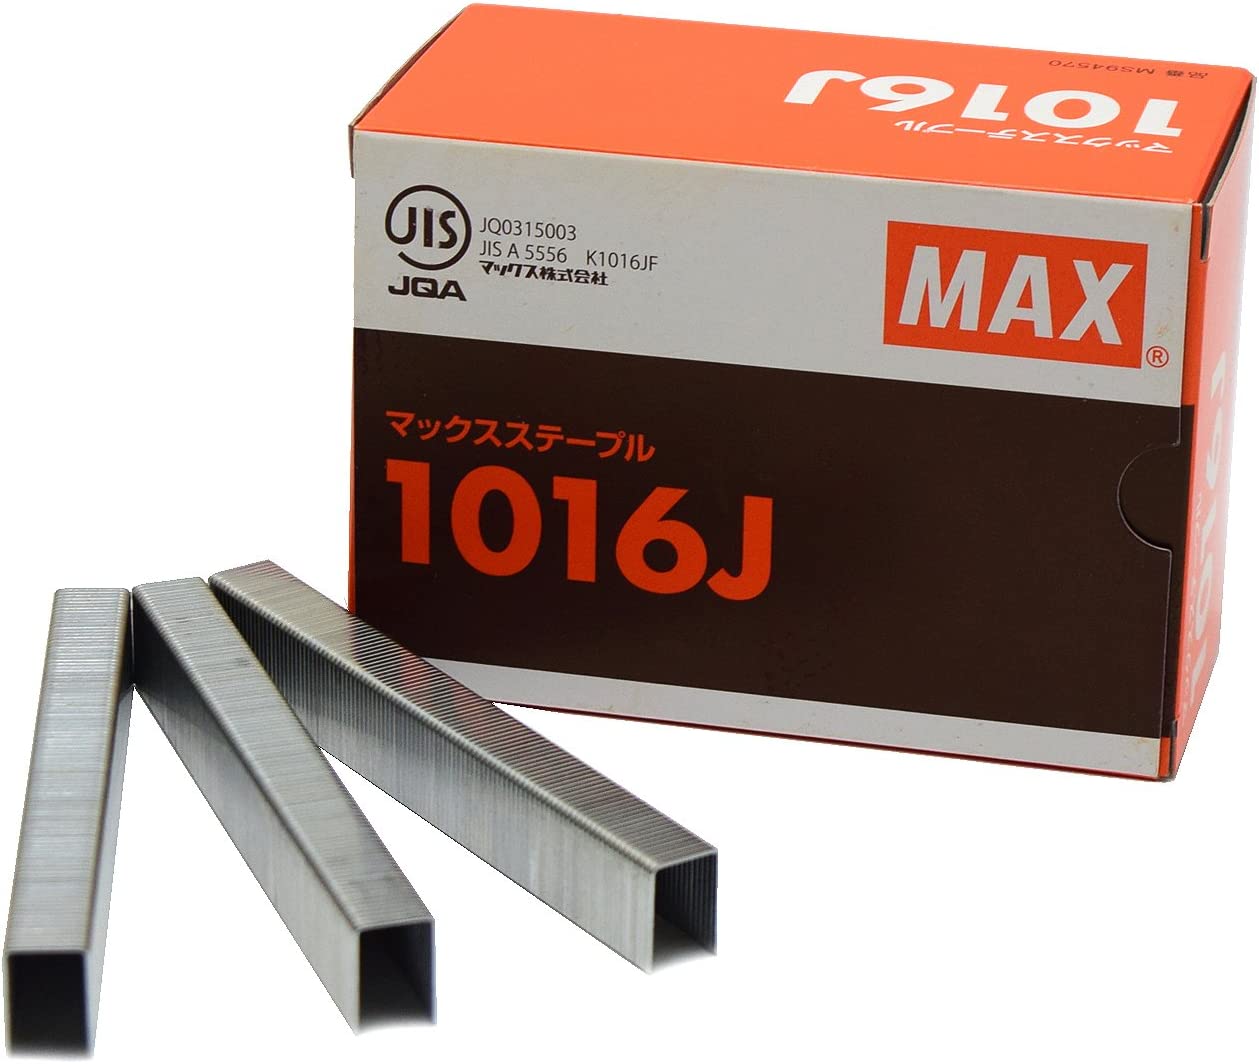 マックス(MAX) ステープル MS94570 16mm/鉄(5000本) 1016J